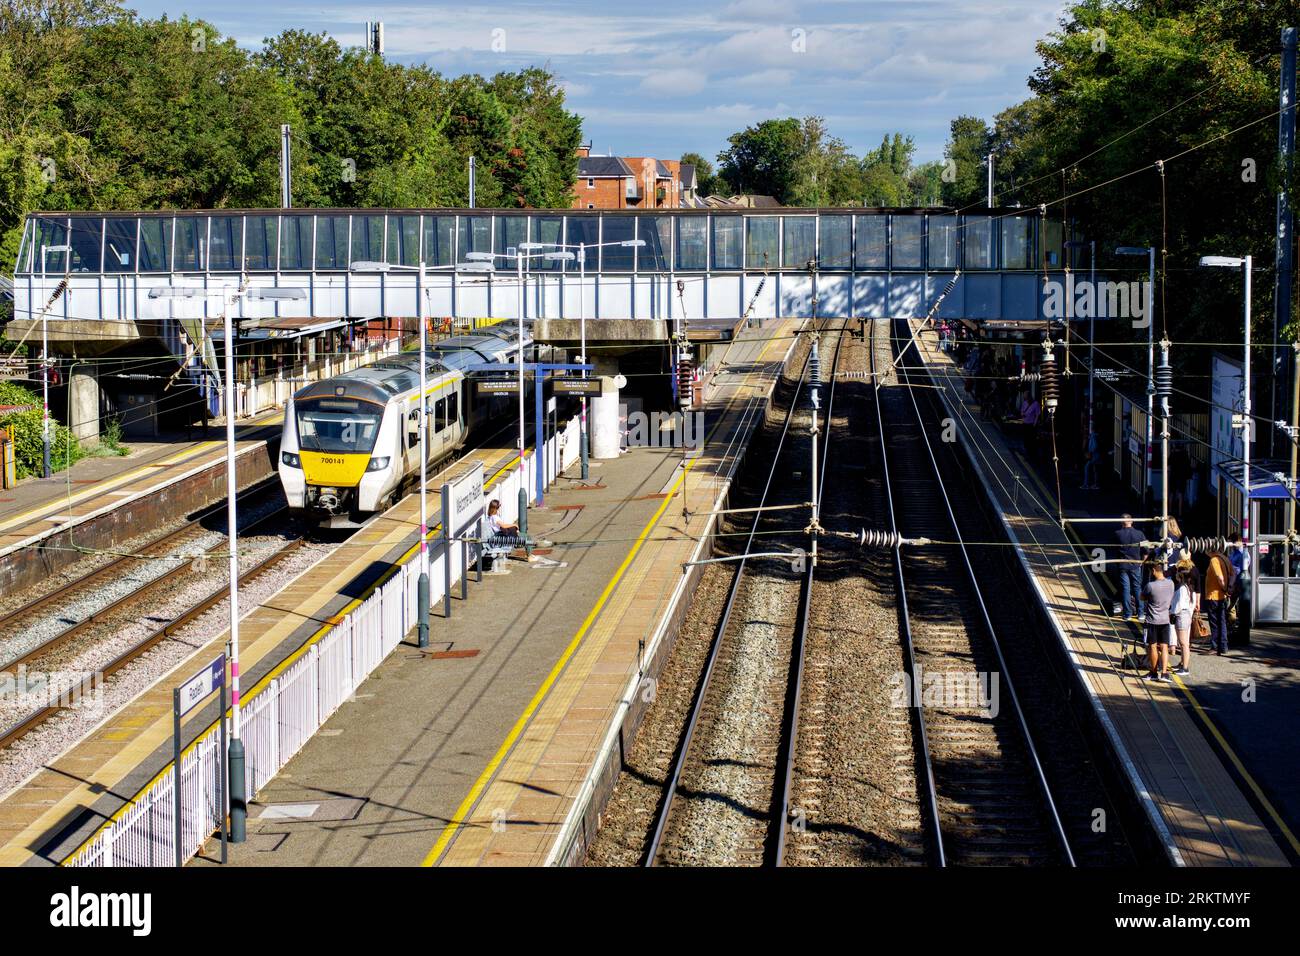 Radlett Railway Station, Radlett, Hertfordshire, England, UK Stock Photo